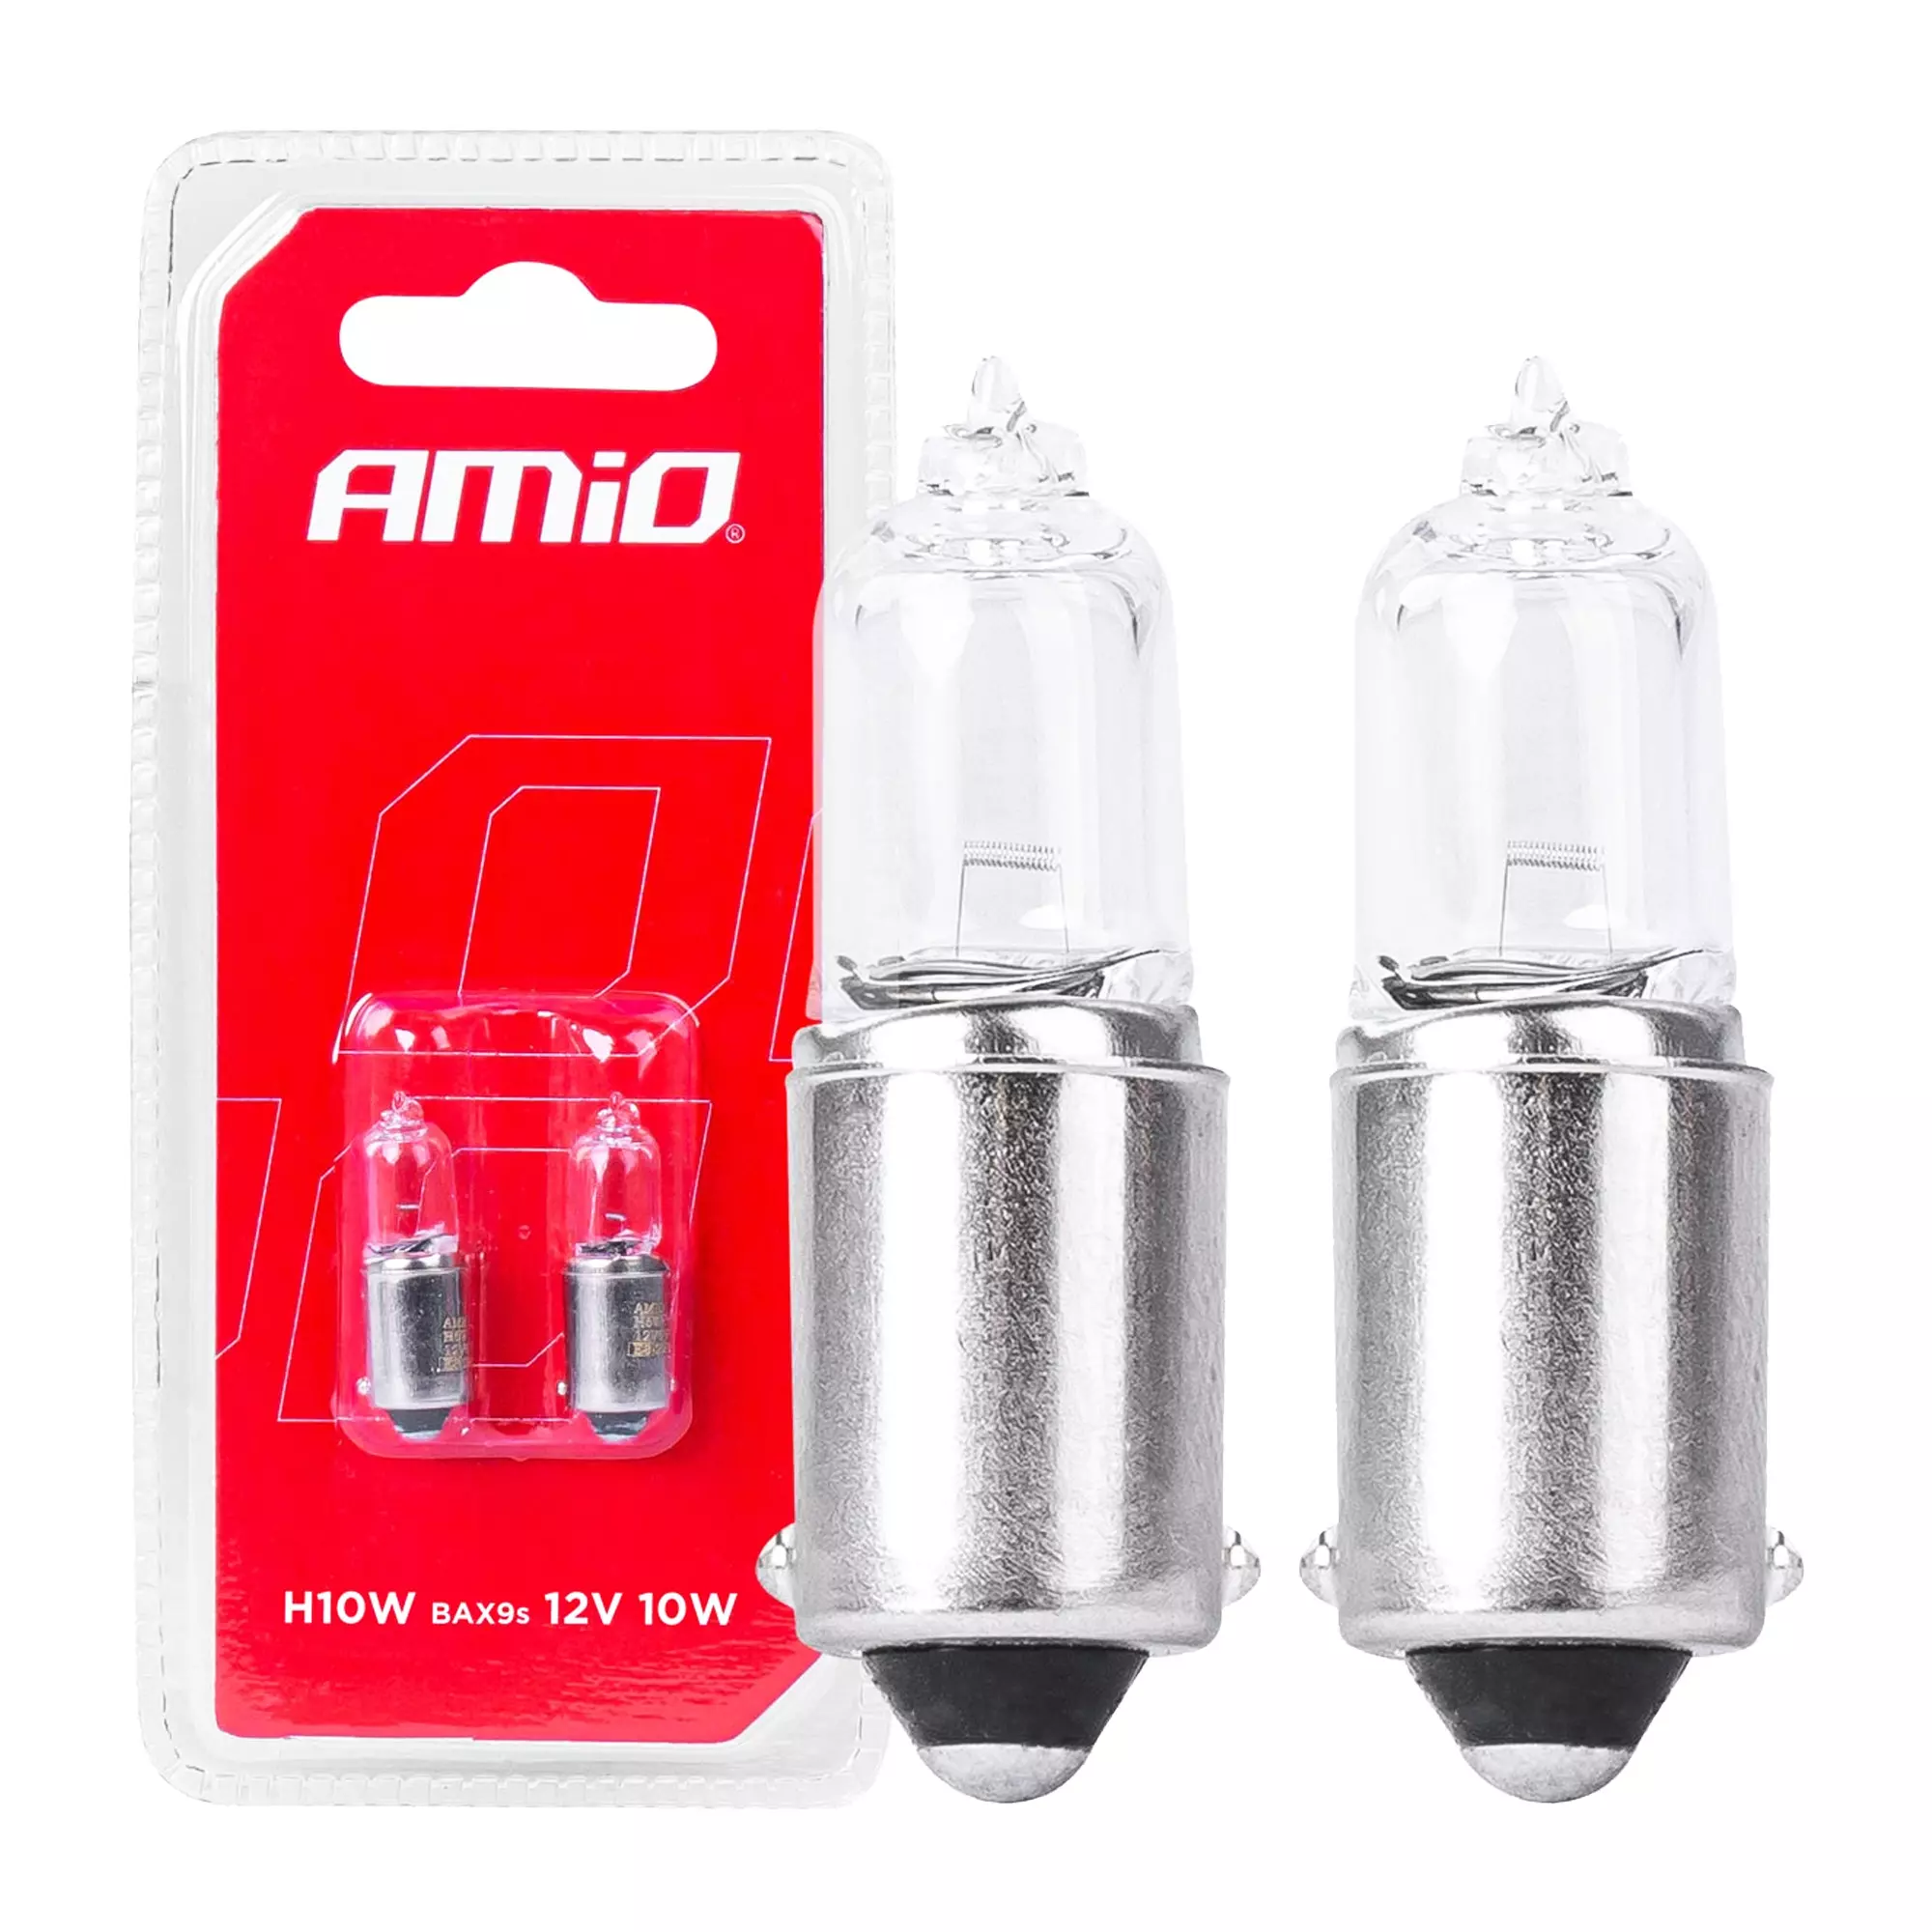 Галогенні лампочки Amio H10W 12V 10W BAX9S 2 шт (03356)